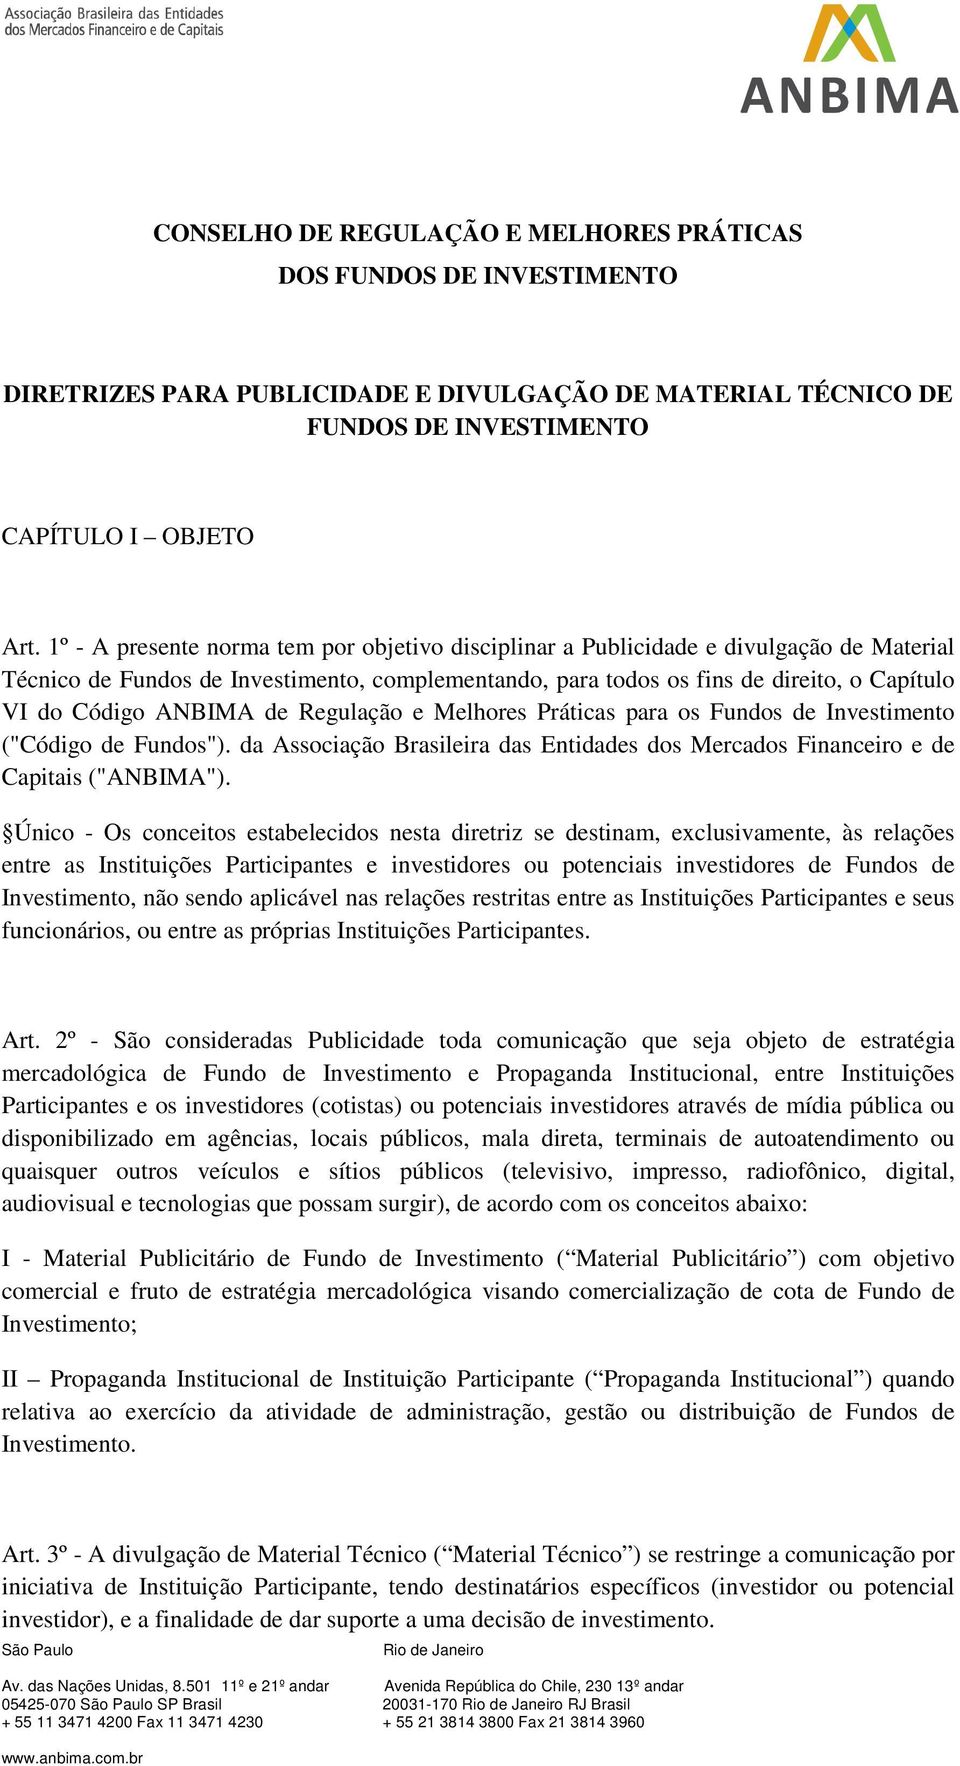 ANBIMA de Regulação e Melhores Práticas para os Fundos de Investimento ("Código de Fundos"). da Associação Brasileira das Entidades dos Mercados Financeiro e de Capitais ("ANBIMA").